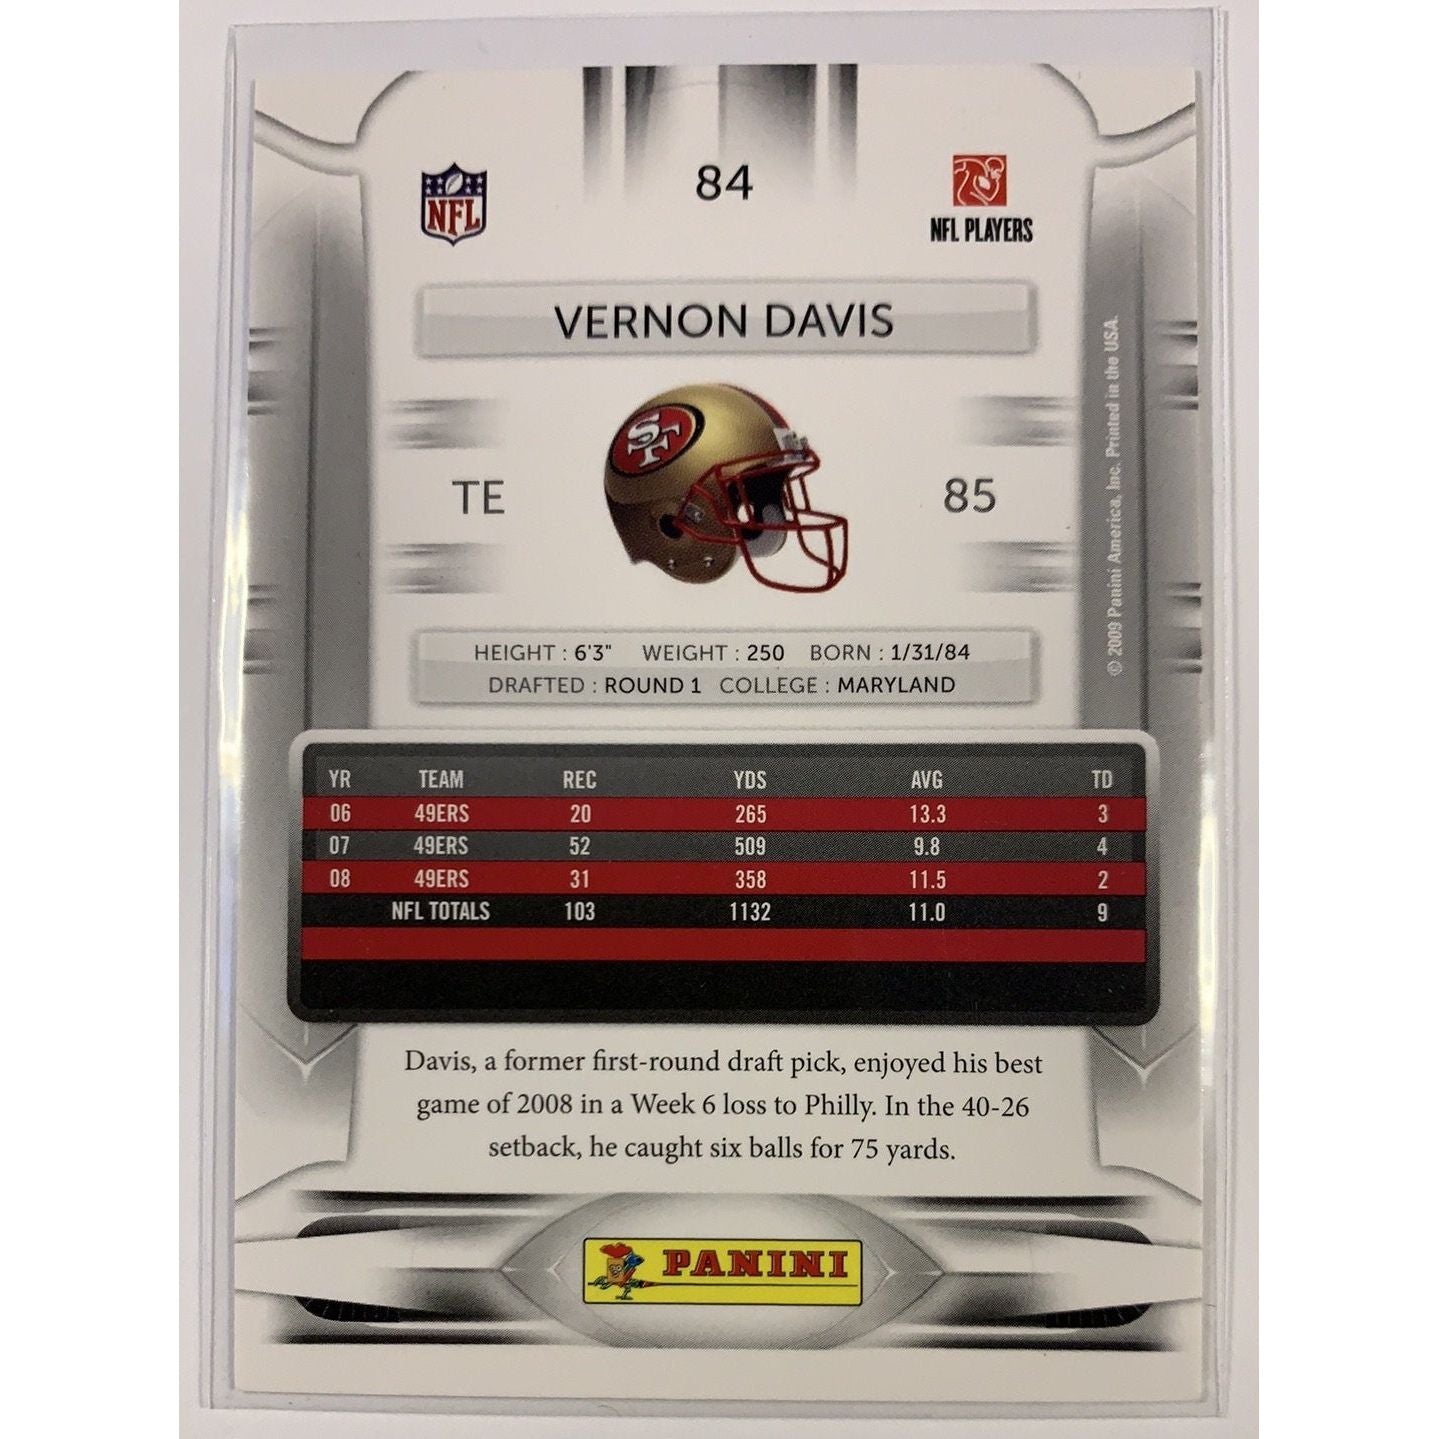  2009 Panini Vernon Davis Base #84  Local Legends Cards & Collectibles